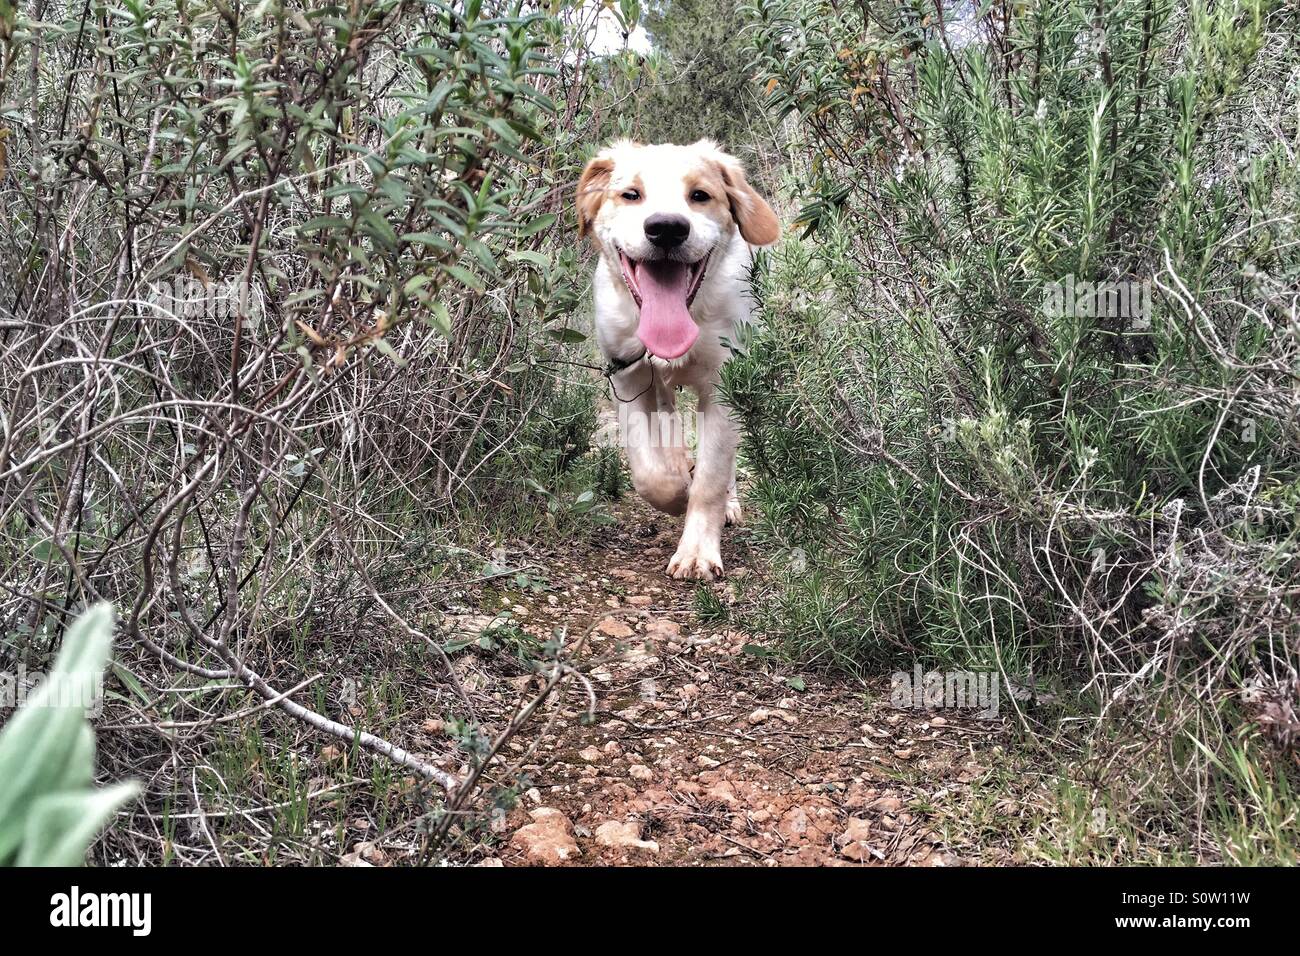 Running puppy Stock Photo